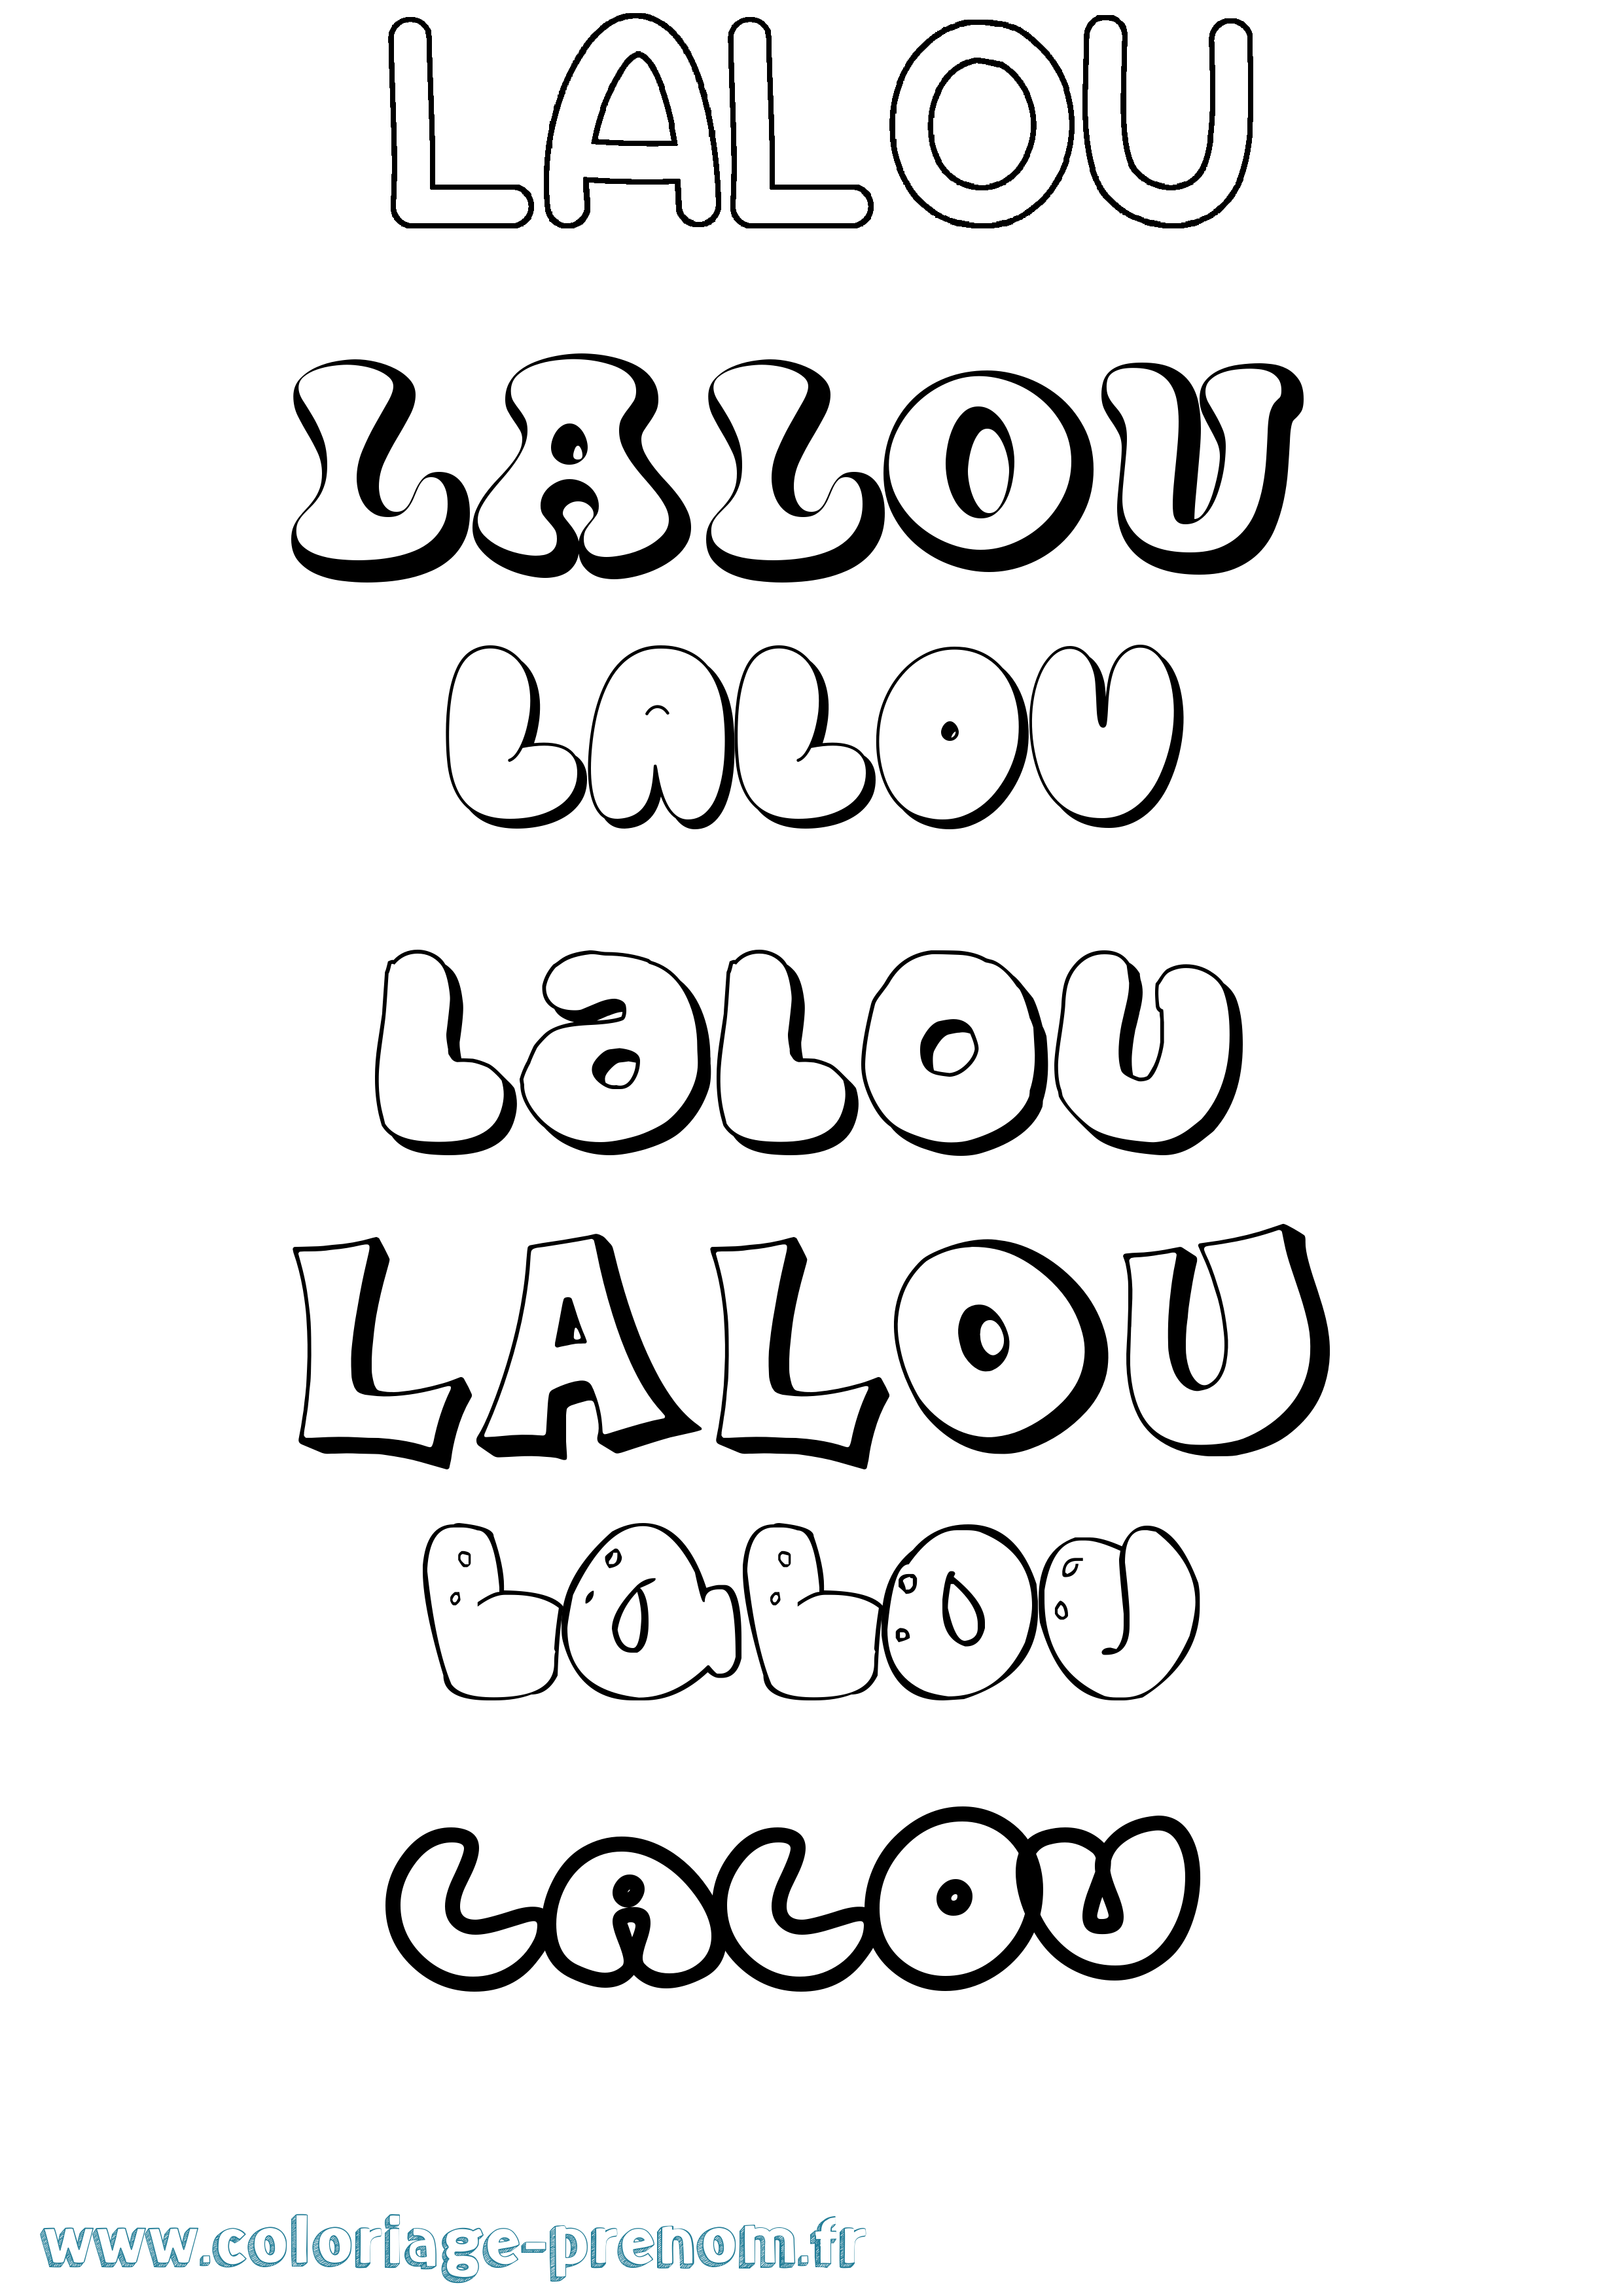 Coloriage prénom Lalou Bubble